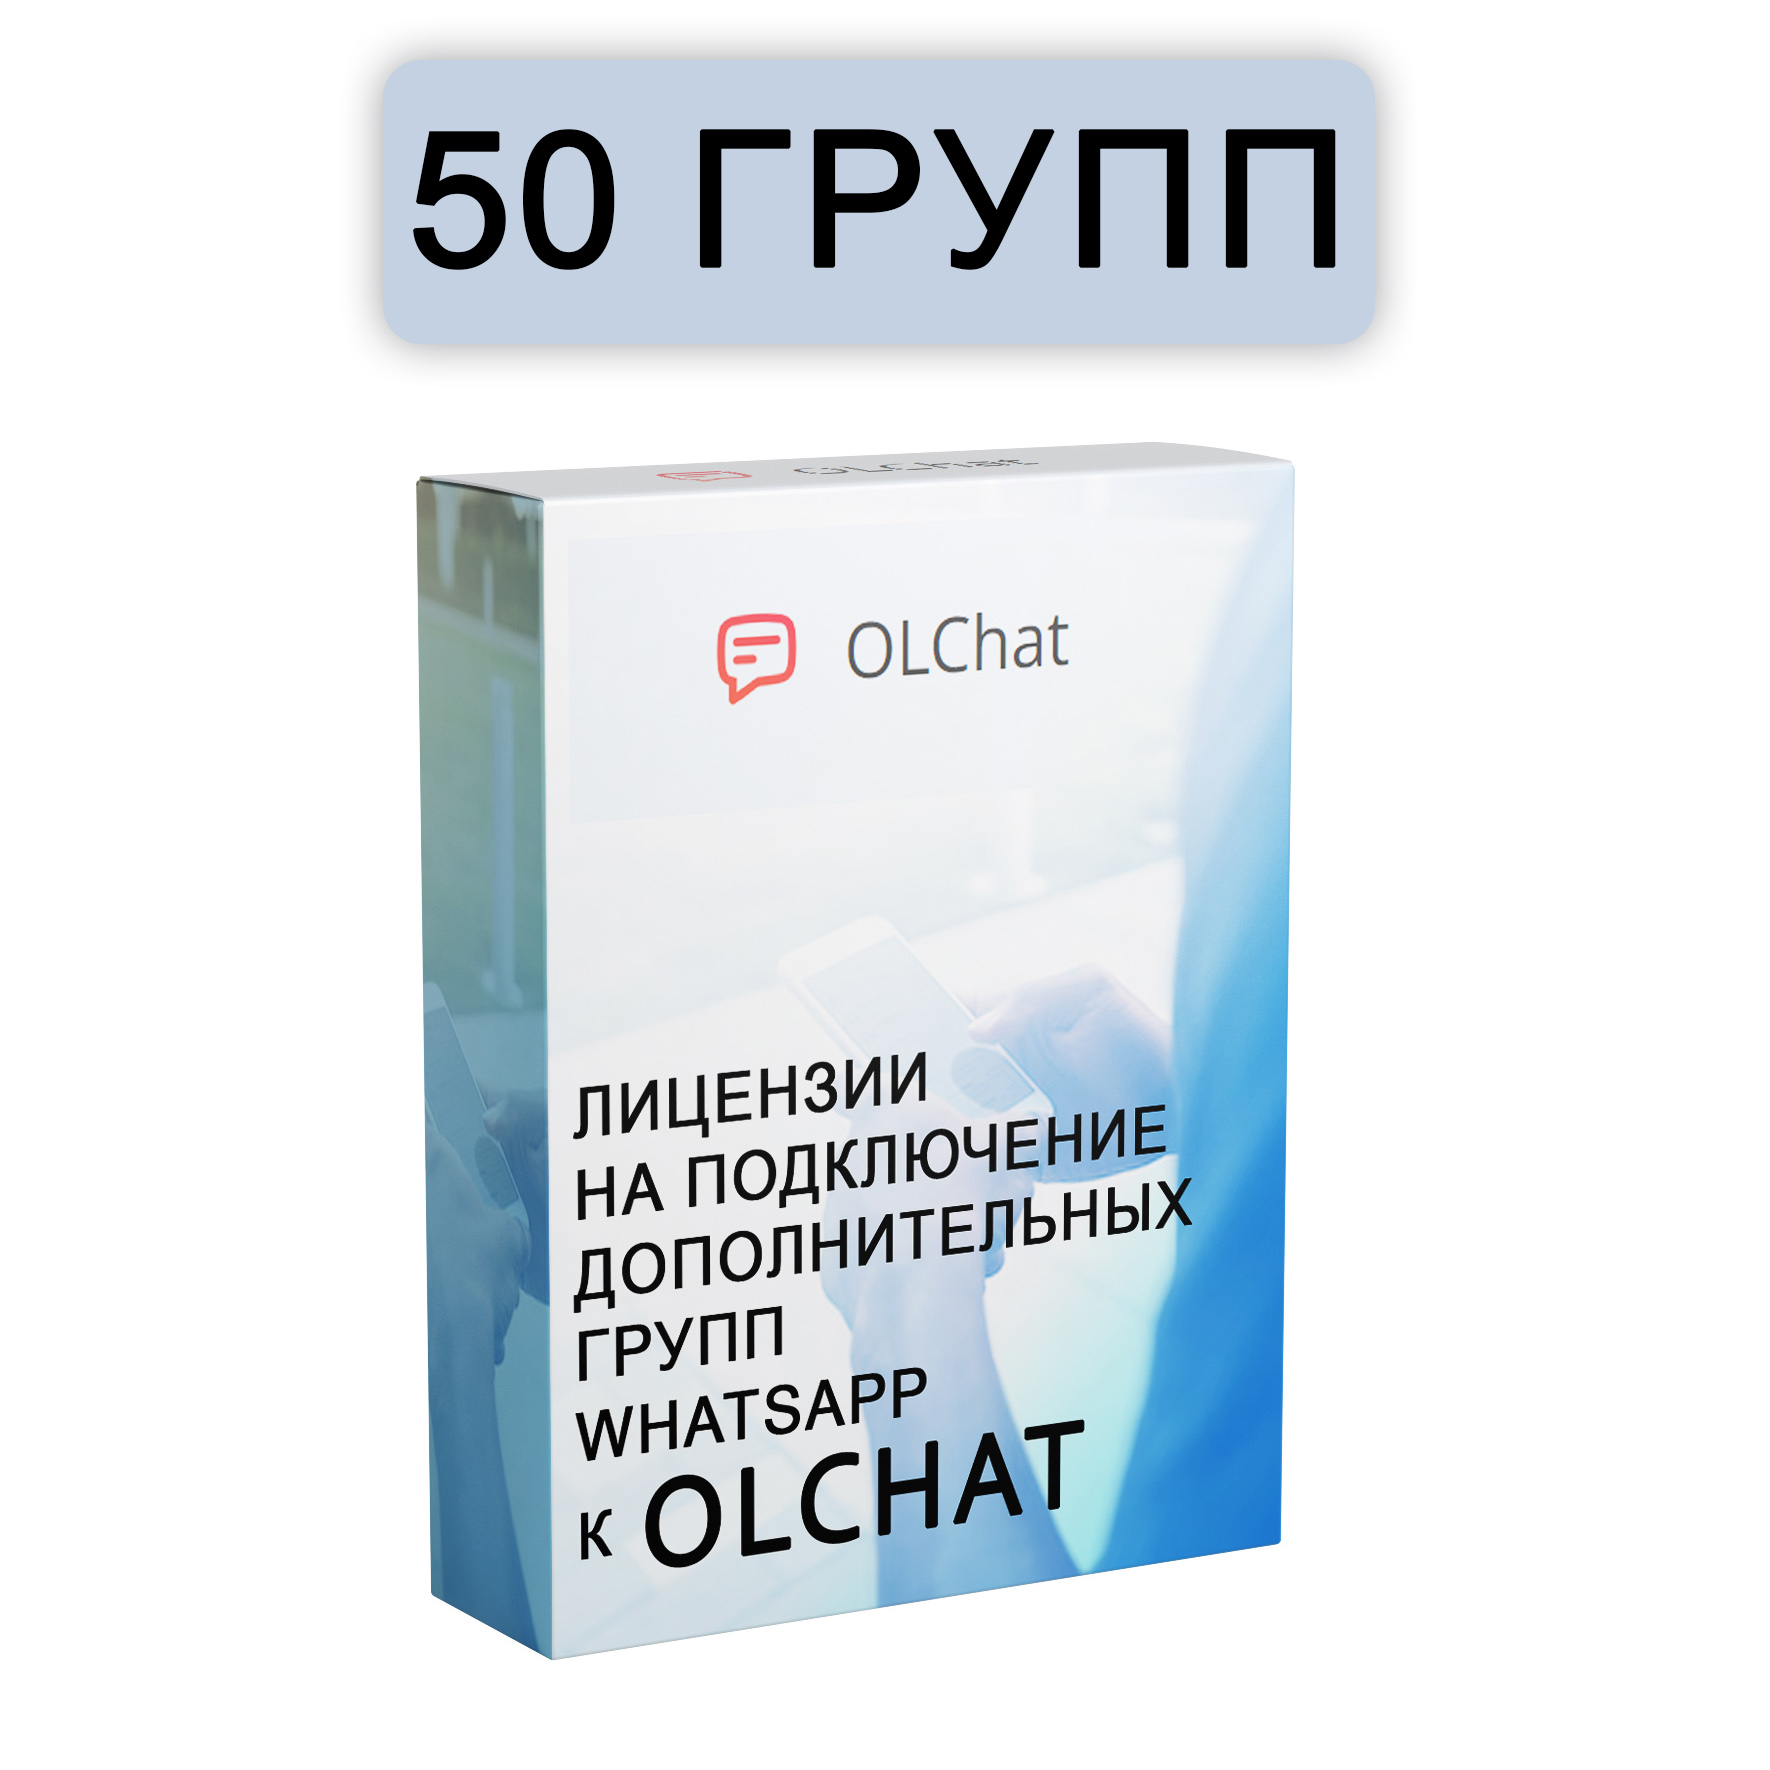 Подключение 50 групп WhatsApp к OLChat на 30 дней